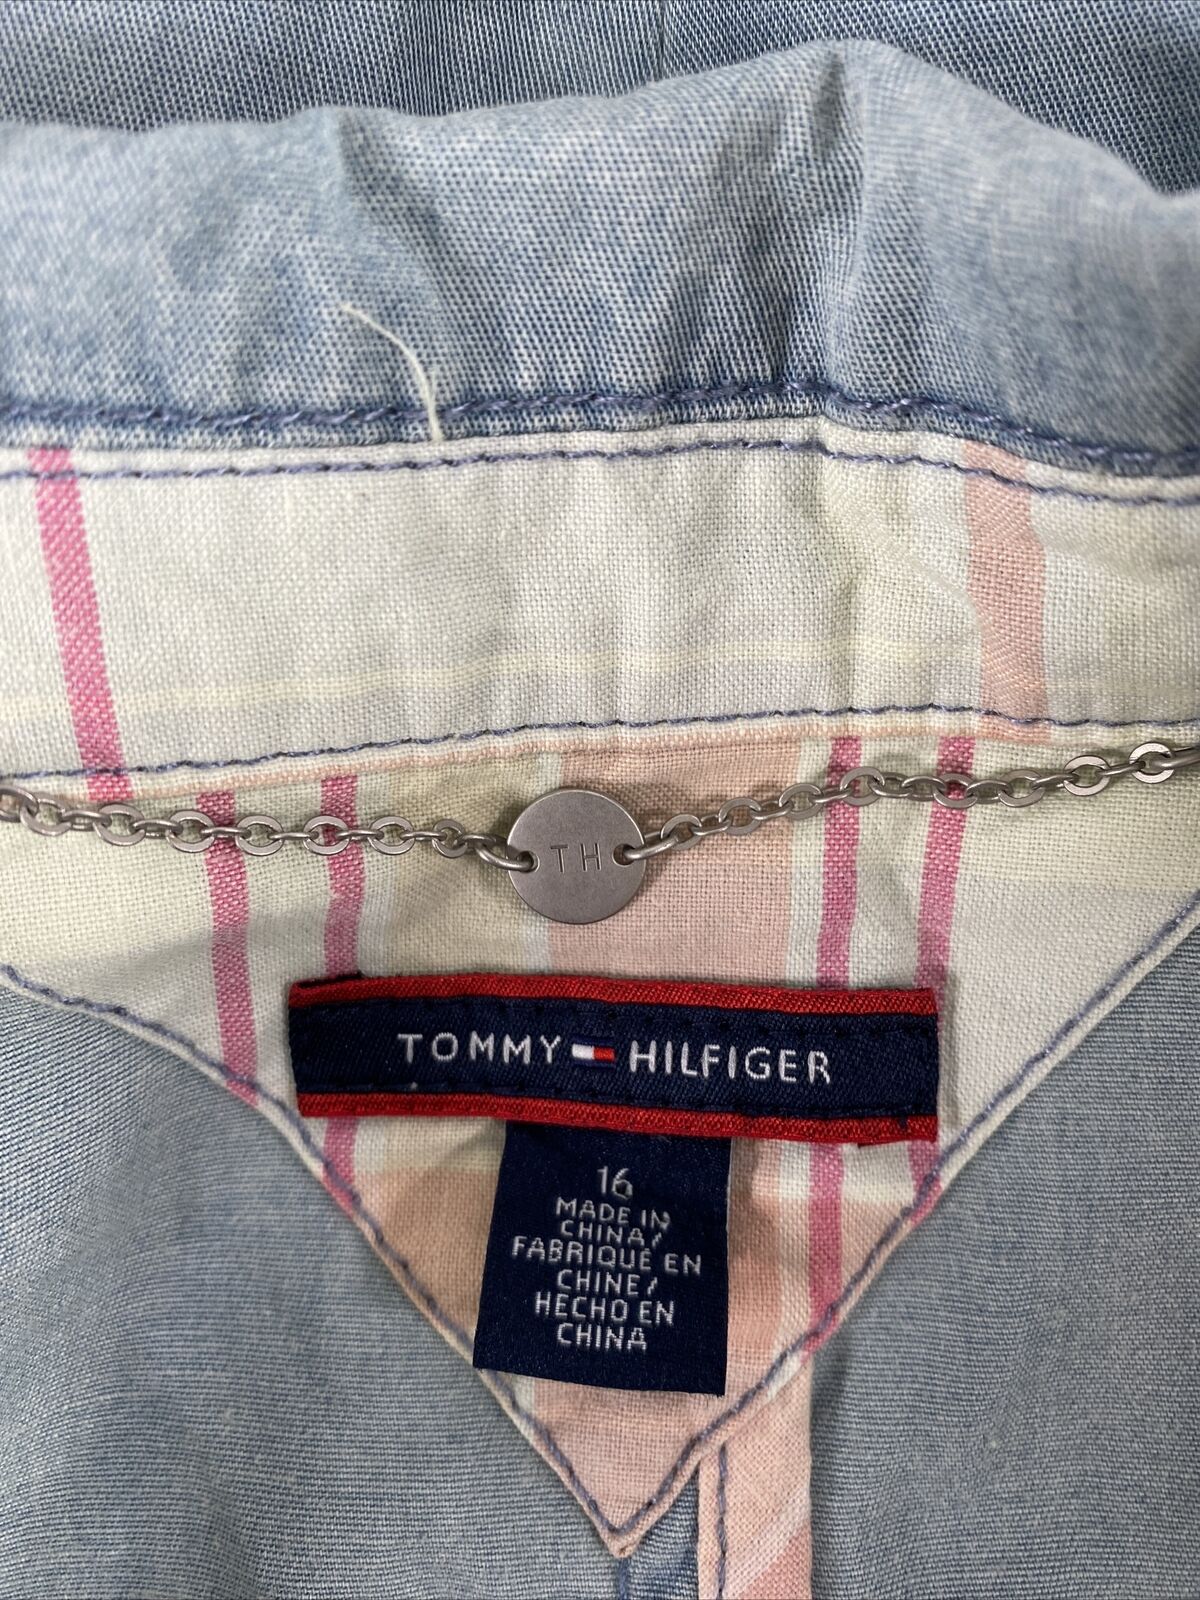 NEW Tommy Hilfiger Women's Light Wash Denim Blazer Jacket - 16